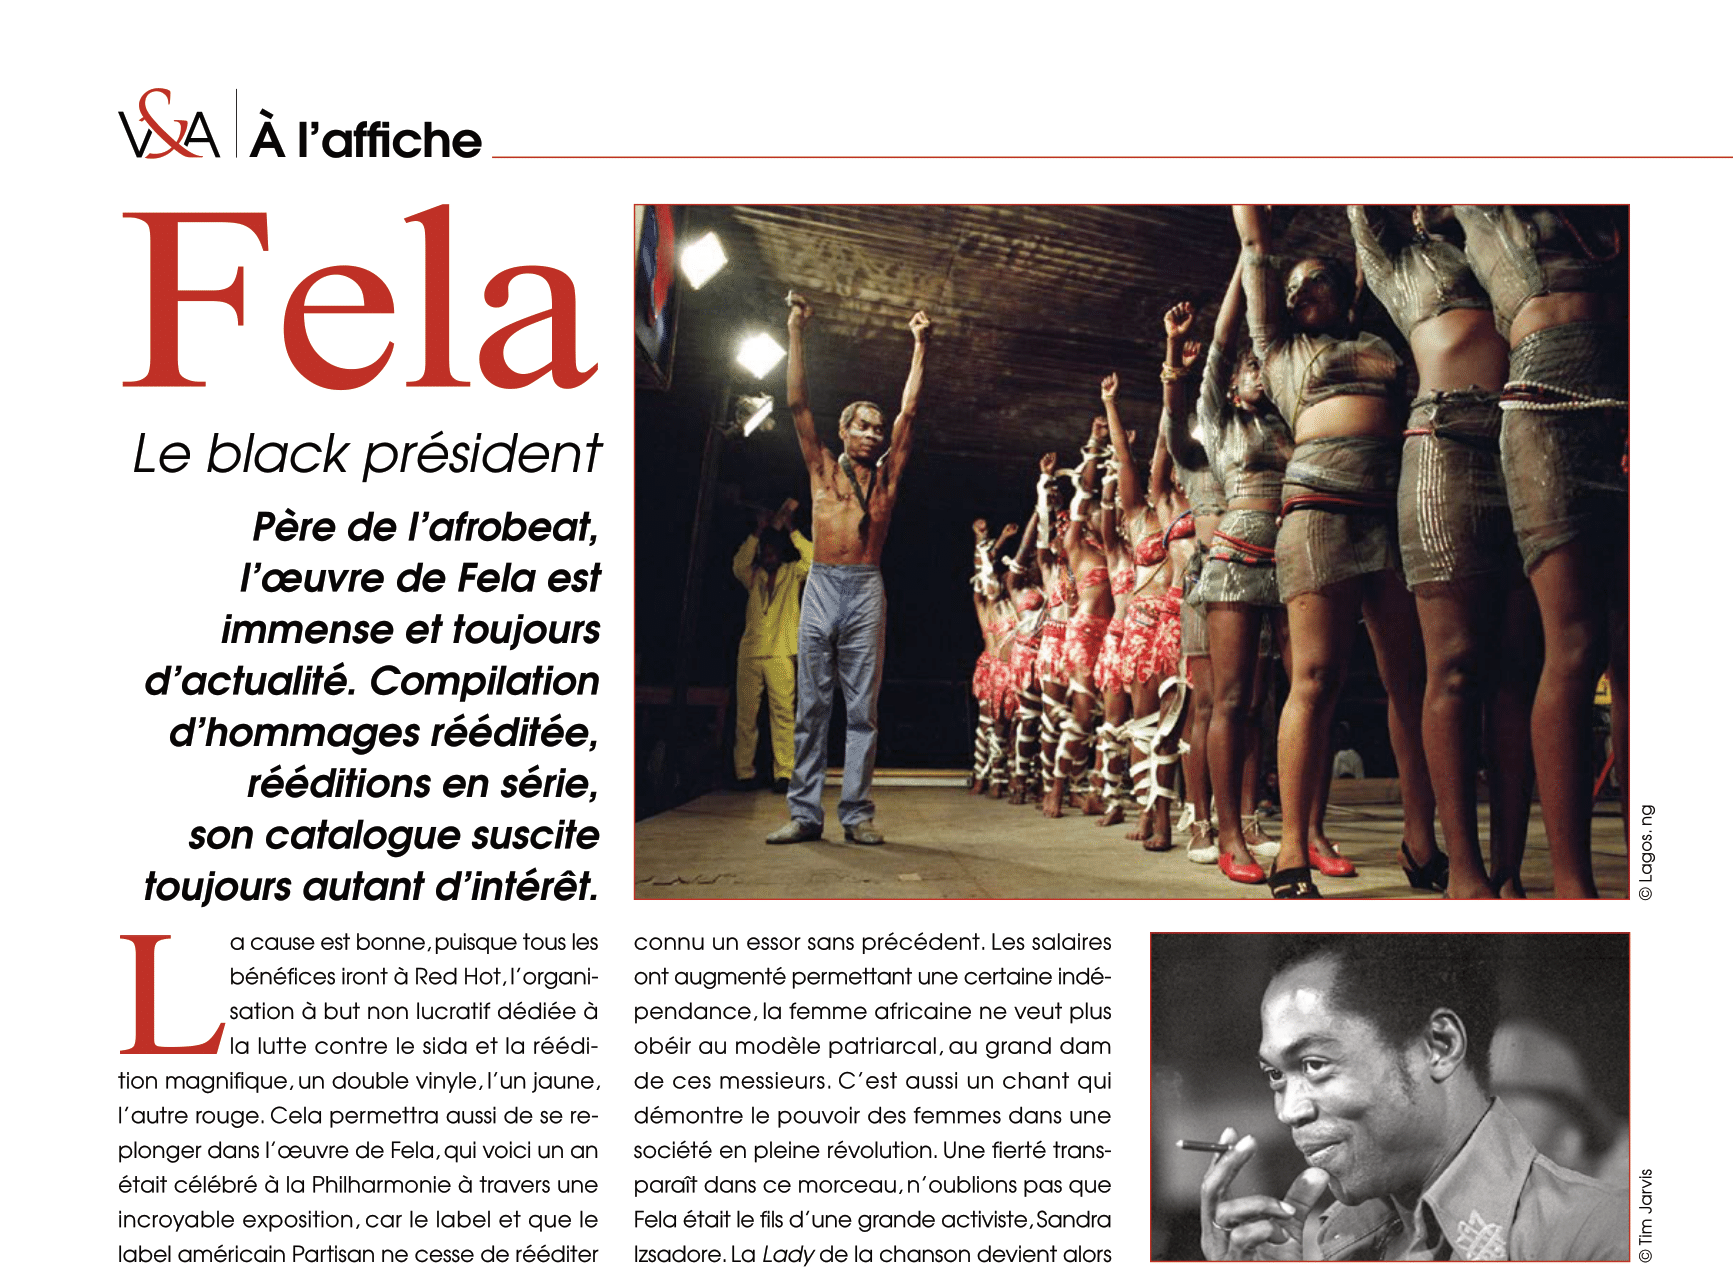 A l’affiche de Vinyle & Audio numéro 22 : Fela, le black president